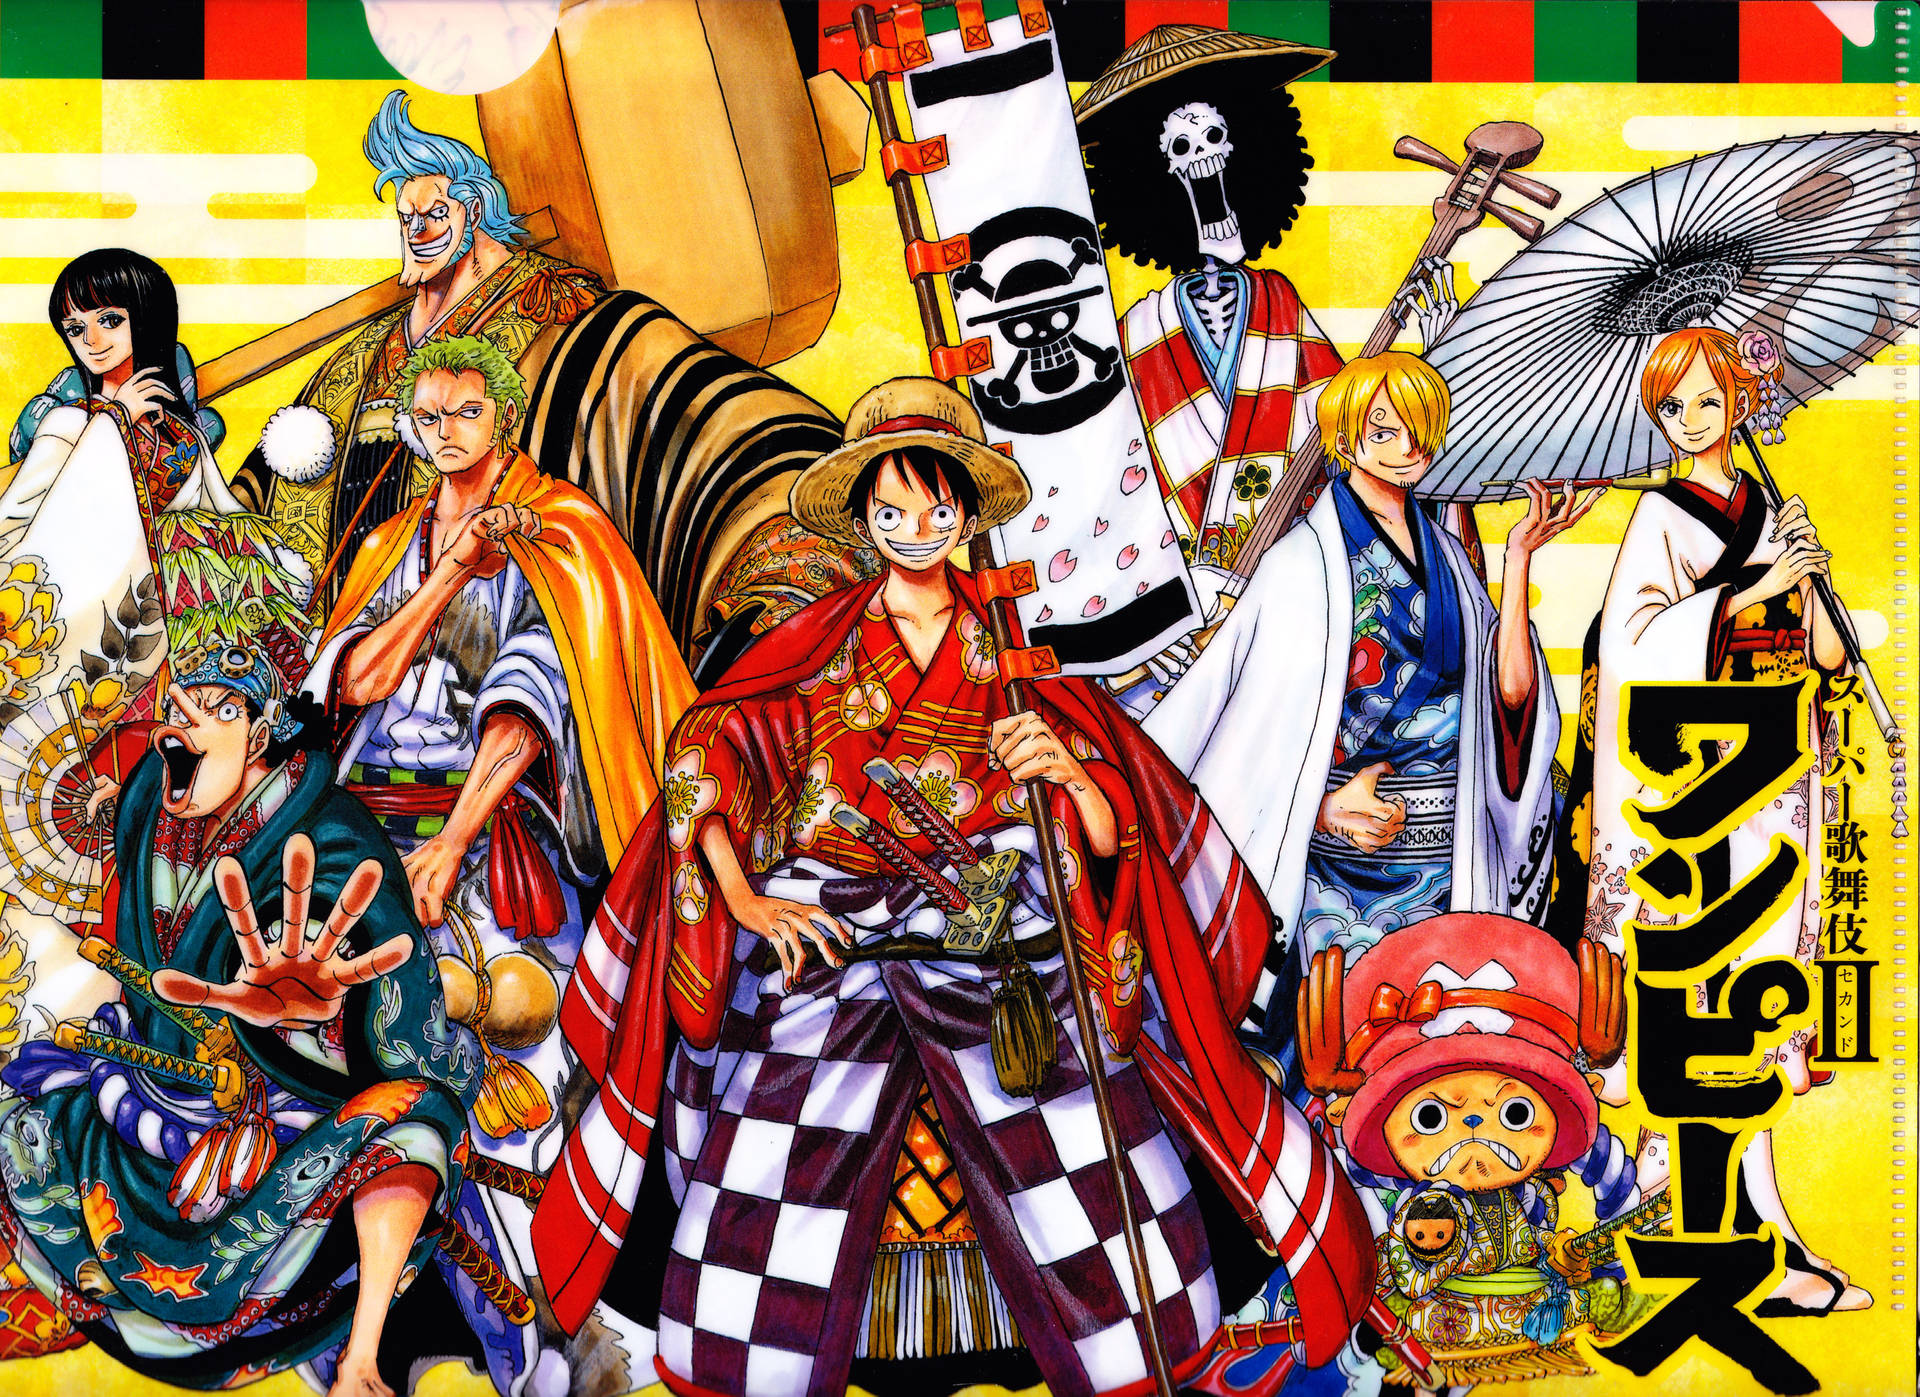 Tải hình nền One Piece Wano ngay thôi! Hình nền thể hiện Wano quốc - một trong những địa điểm đầy kỳ vĩ trong One Piece. Hãy làm mới màn hình của bạn với hình ảnh đẹp mắt này!